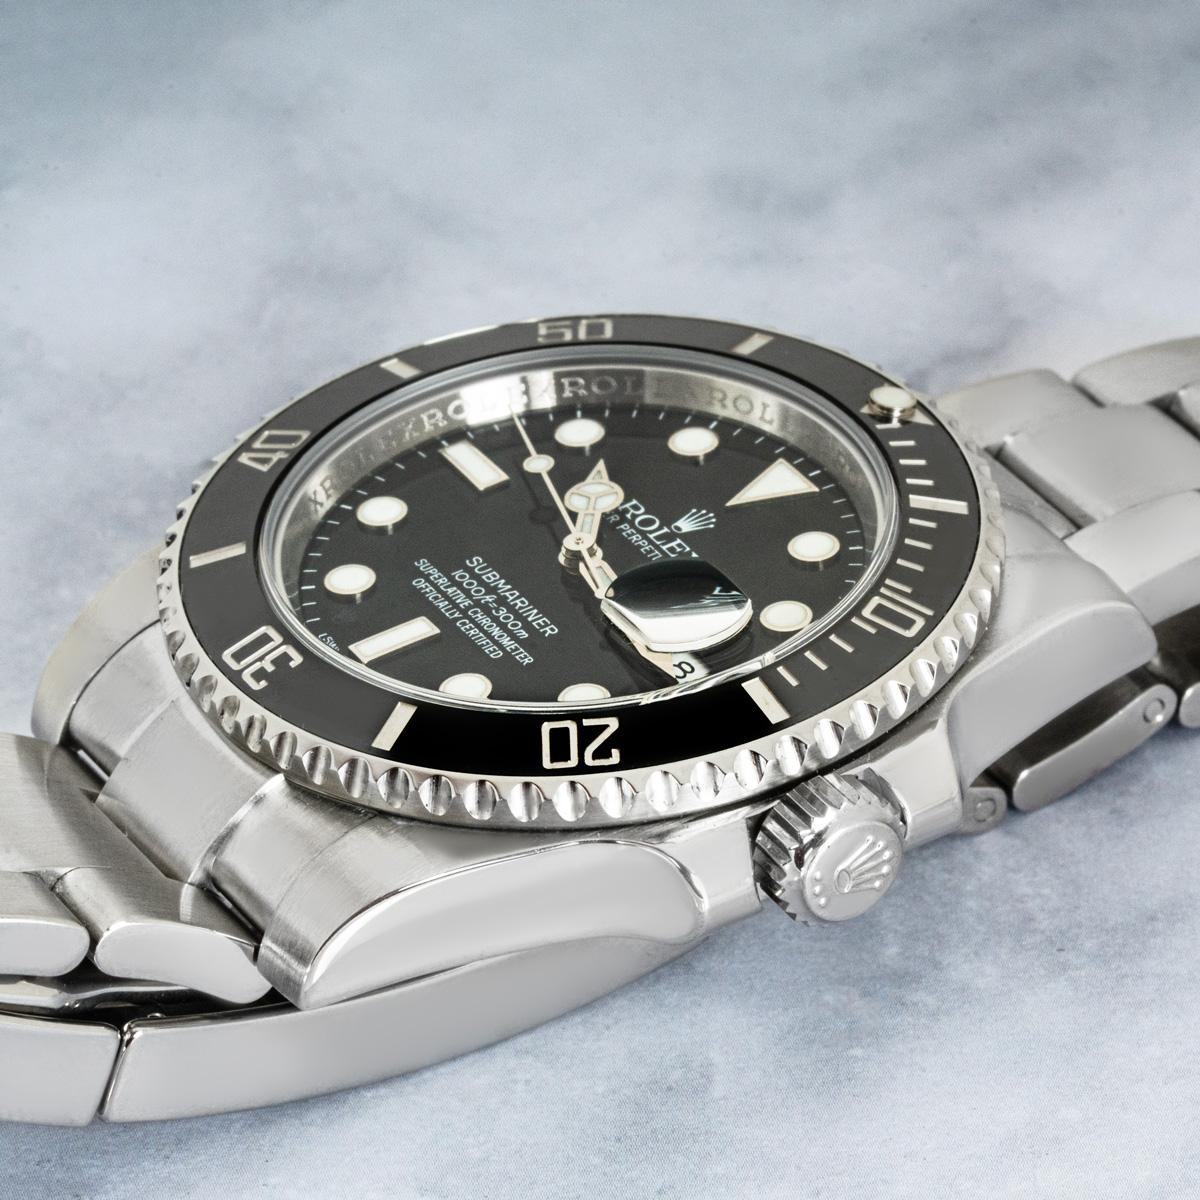 Eine Submariner Date aus Edelstahl von Rolex. Sie verfügt über ein schwarzes Zifferblatt, eine Datumsanzeige und eine einseitig drehbare Lünette mit 60-Minuten-Teilung. Ausgestattet mit einem Oyster-Armband und einer Oysterlock-Faltschließe. Die Uhr